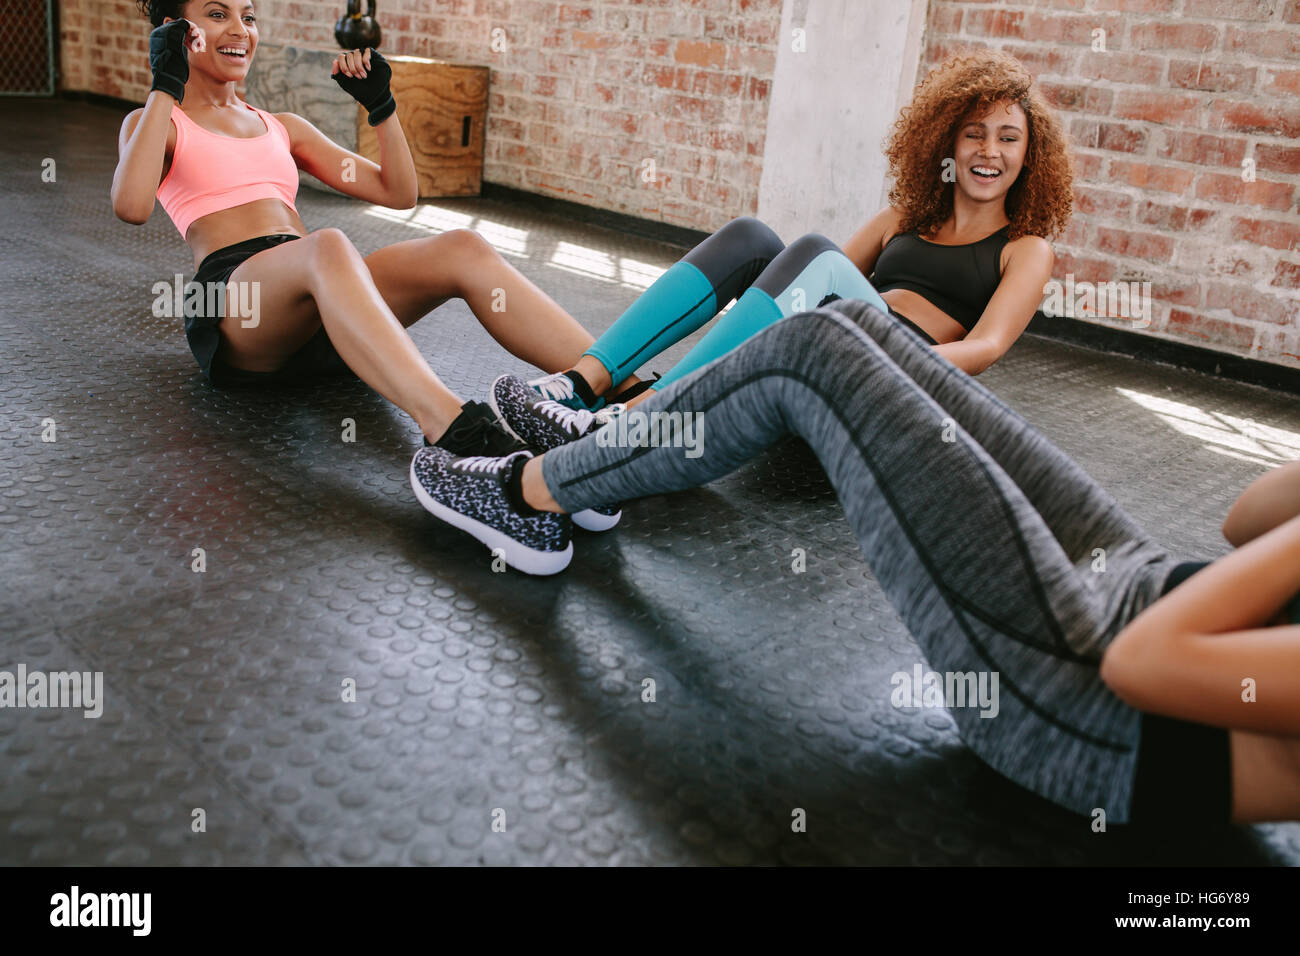 Grupo de mujeres ejercitarse en el gimnasio. Tres joven haciendo situps juntos en el gimnasio. Foto de stock